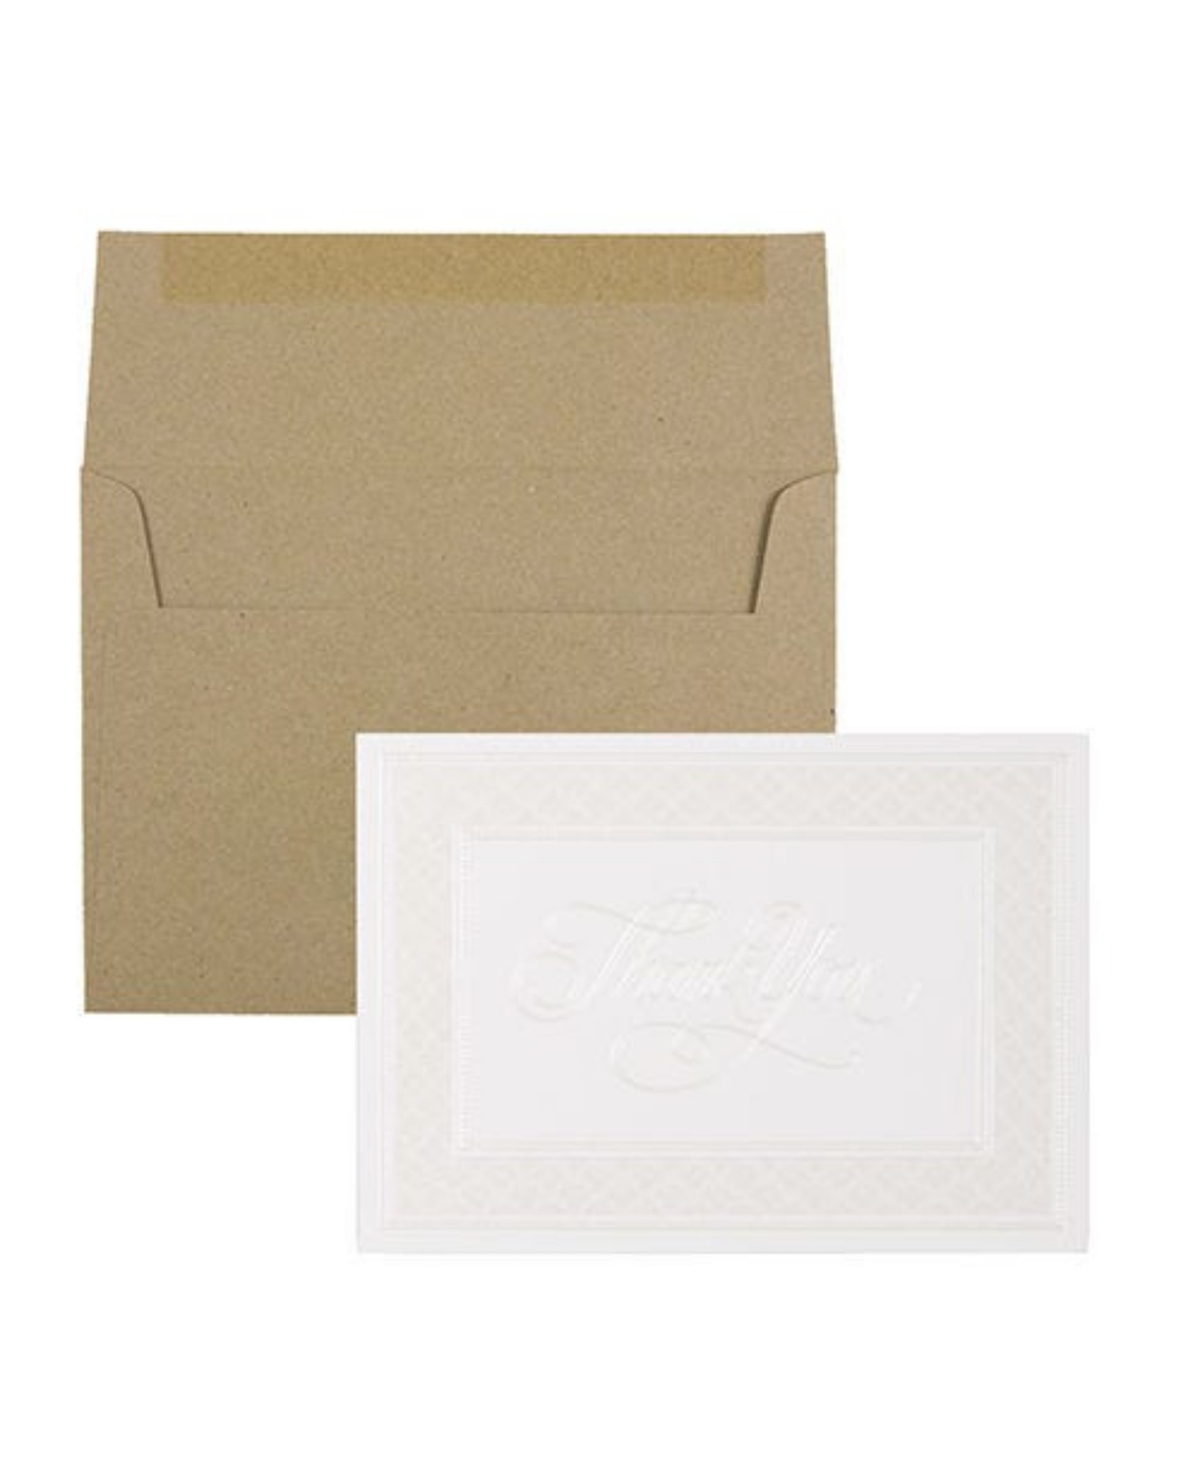 Thank You Card Sets - 25 Cards and Envelopes - Border Cards Brown Kraft Envelopes